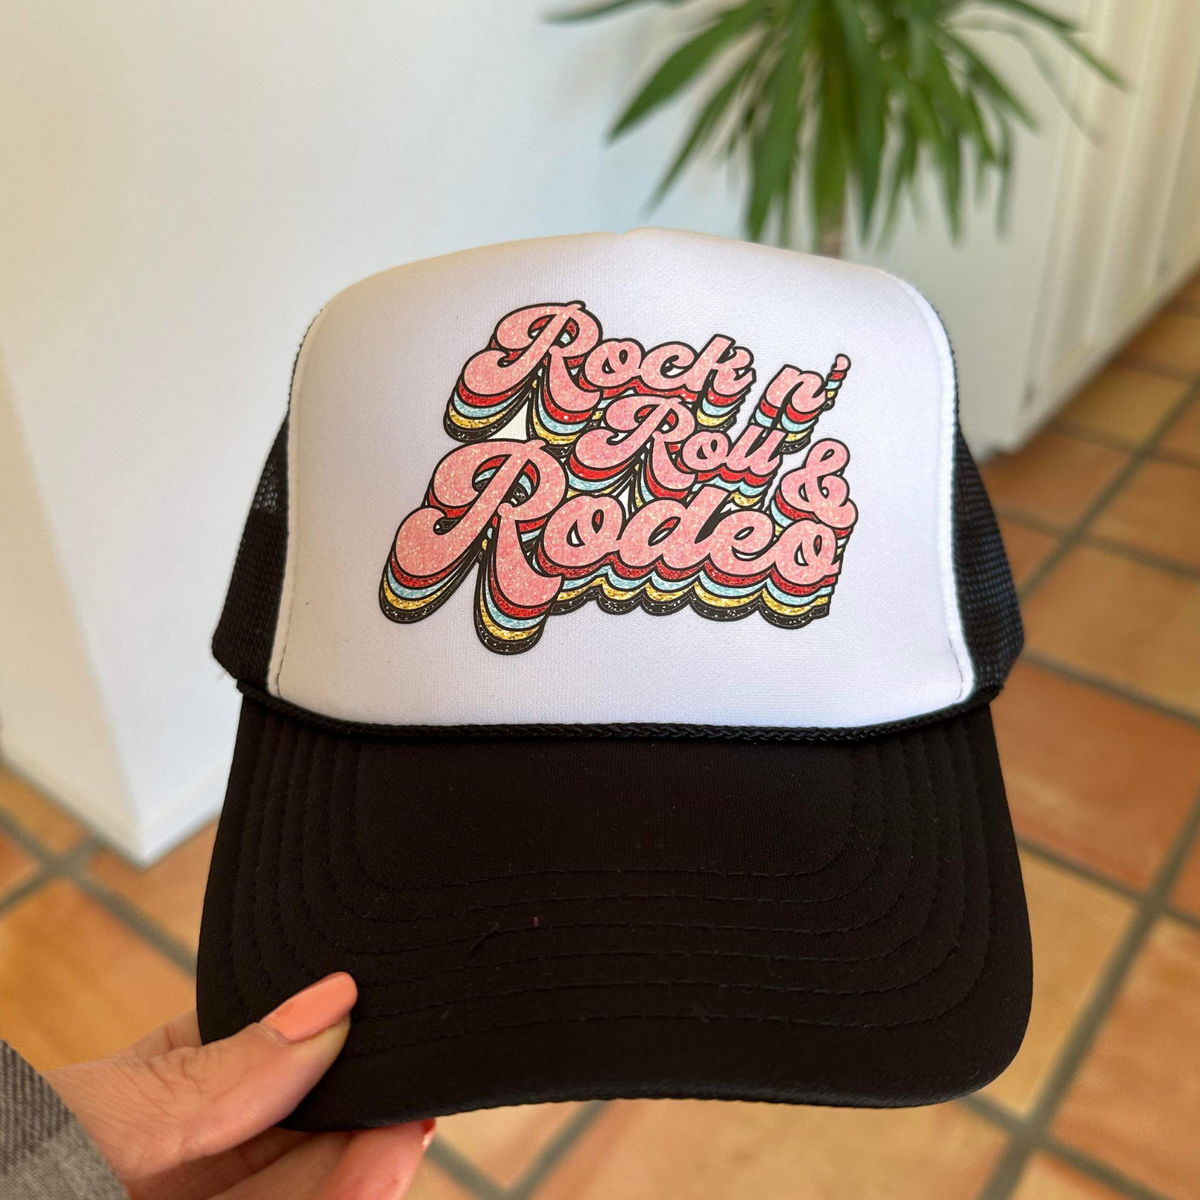 Rock N Roll Rodeo Trucker Hat | Black and White Trucker Hat by Haute Sheet